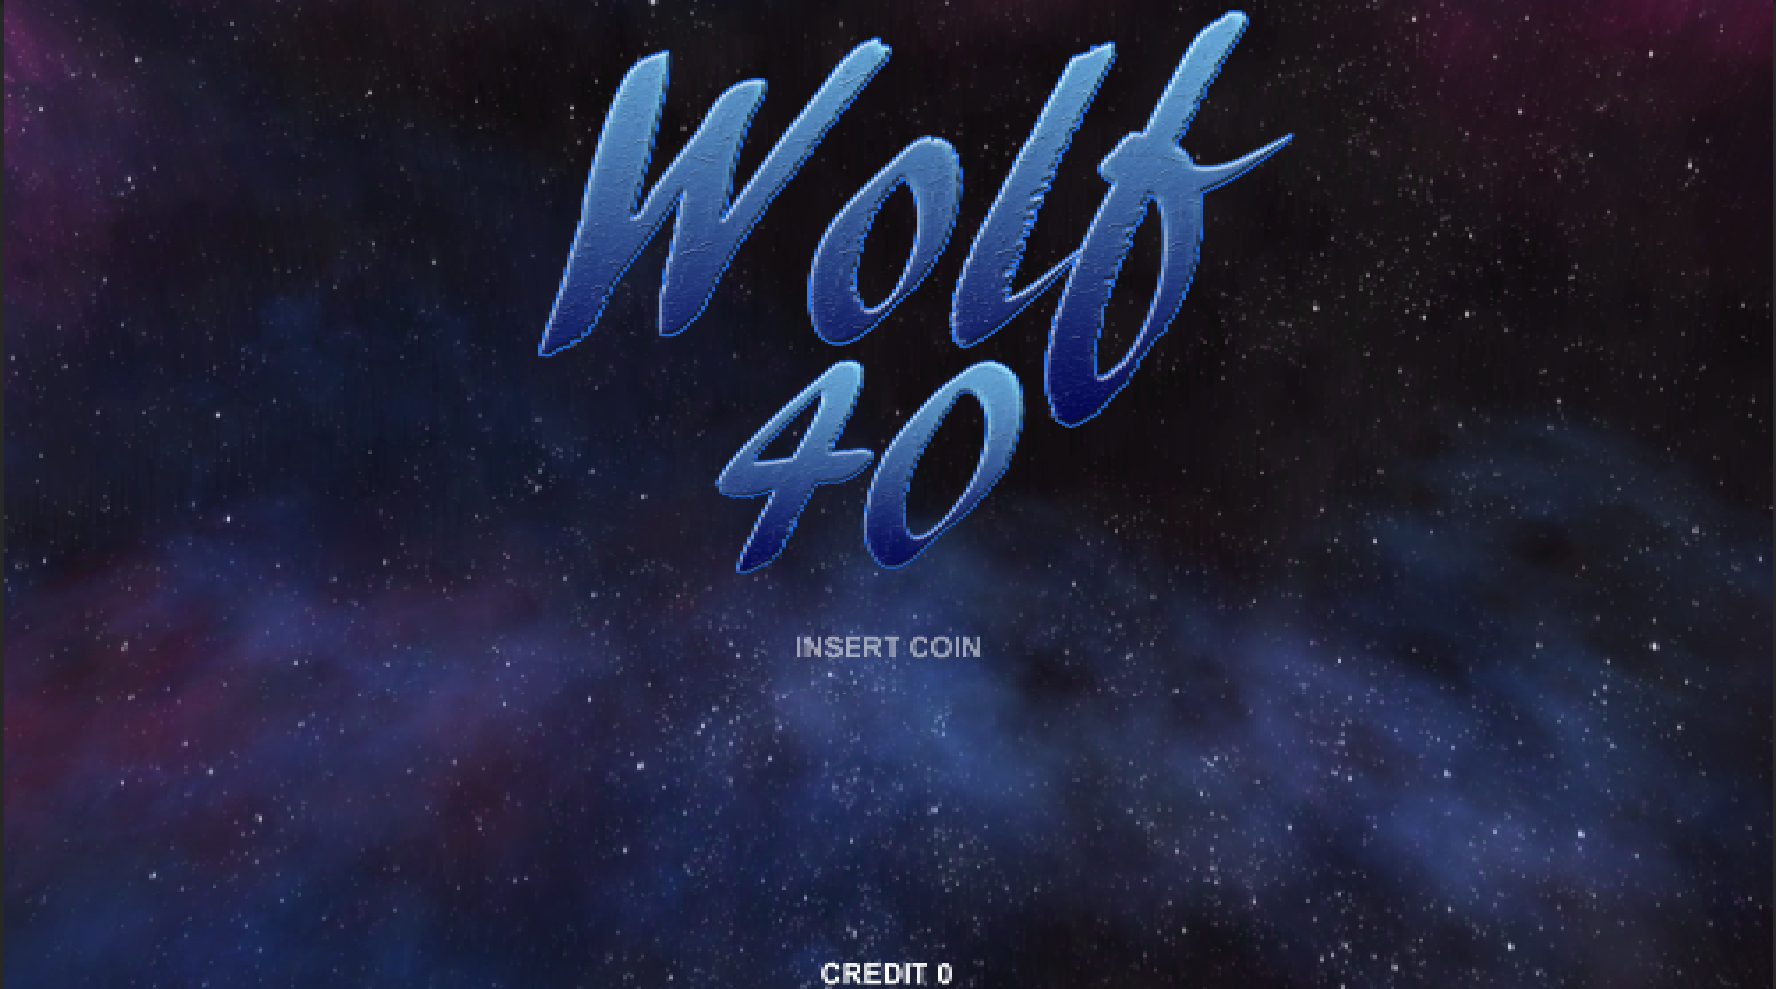 Wolf 40